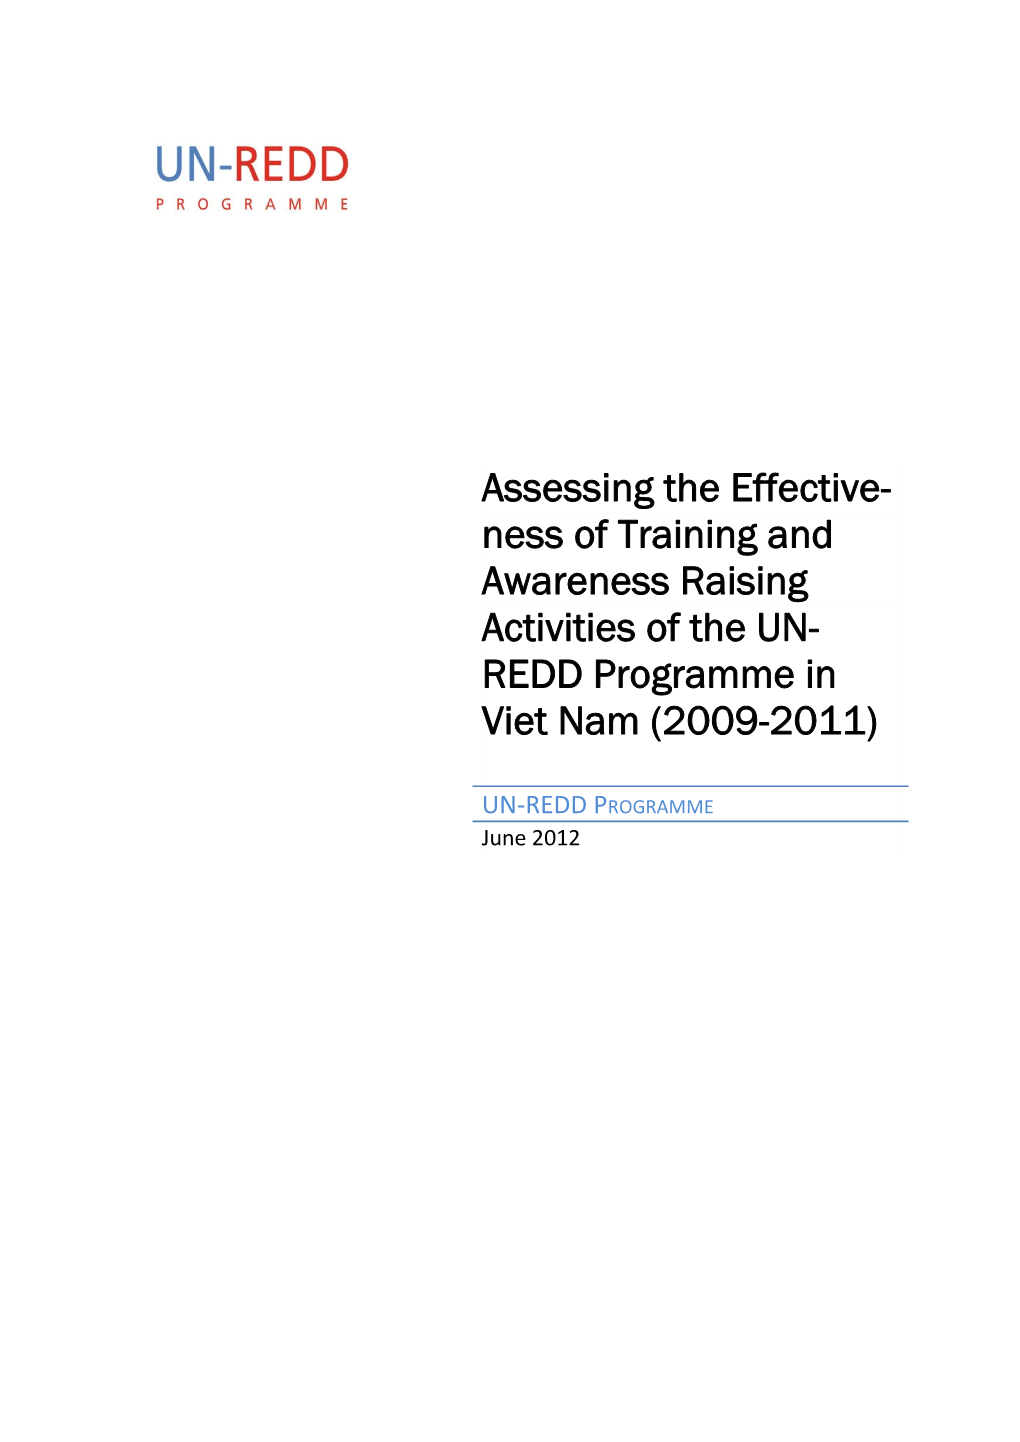 REDD Programme in Viet Nam (2009-2011)